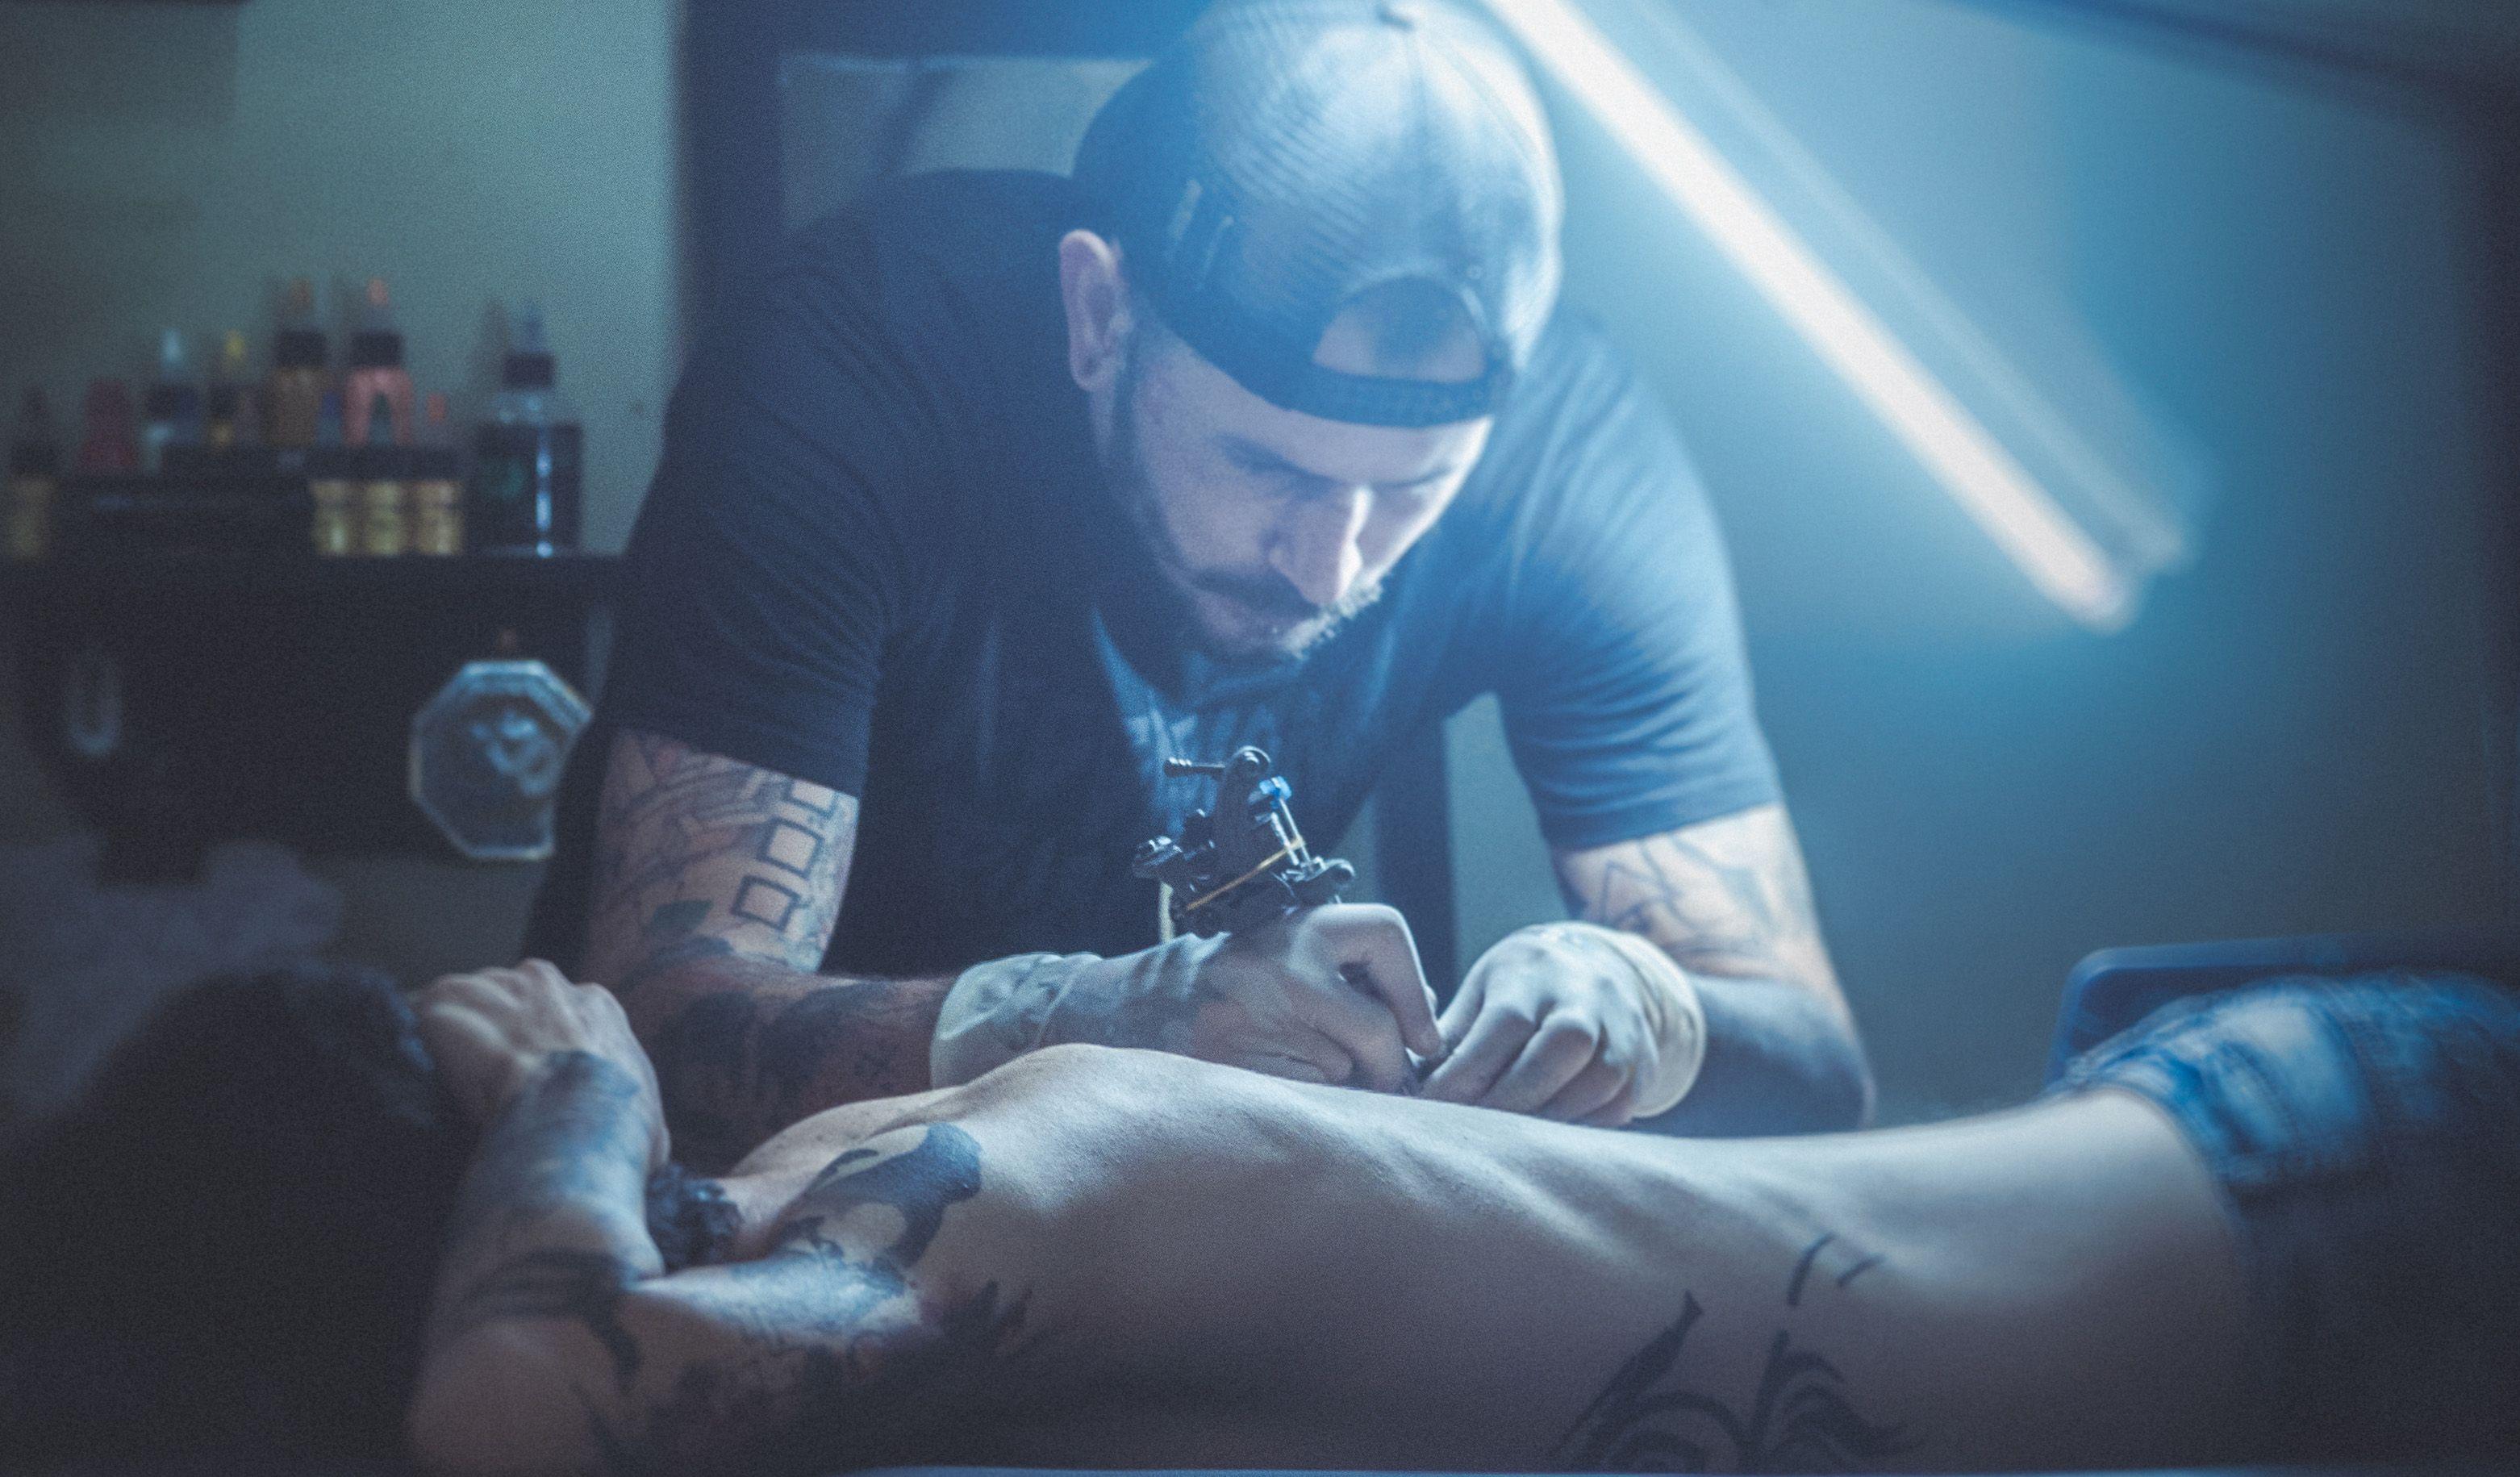 Tatuar en Cuba, una profesión que aboga por la legalidad